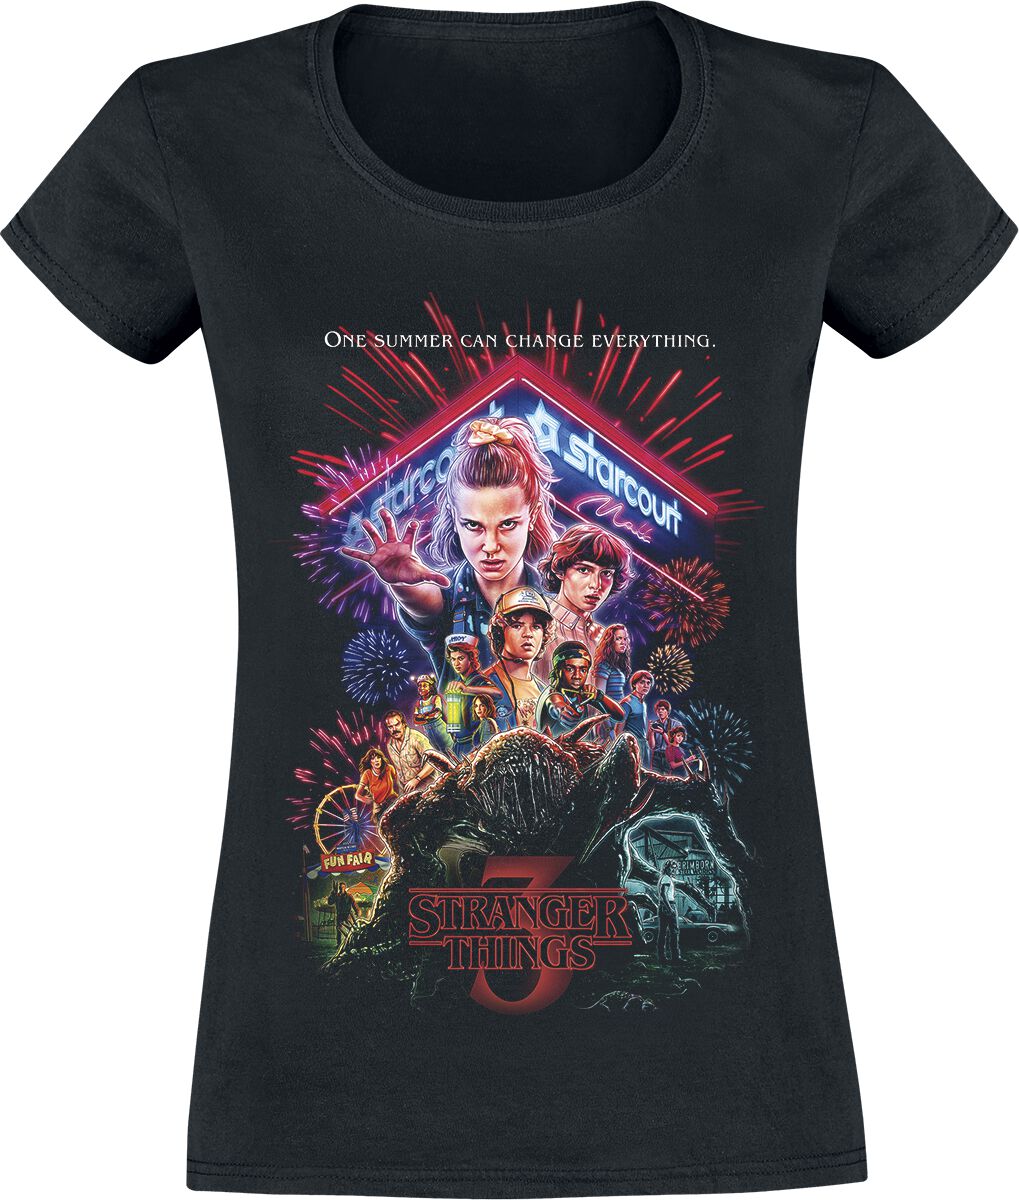 Stranger Things T-Shirt - Staffel 3 Cover - XS bis XXL - für Damen - Größe XXL - schwarz  - EMP exklusives Merchandise!